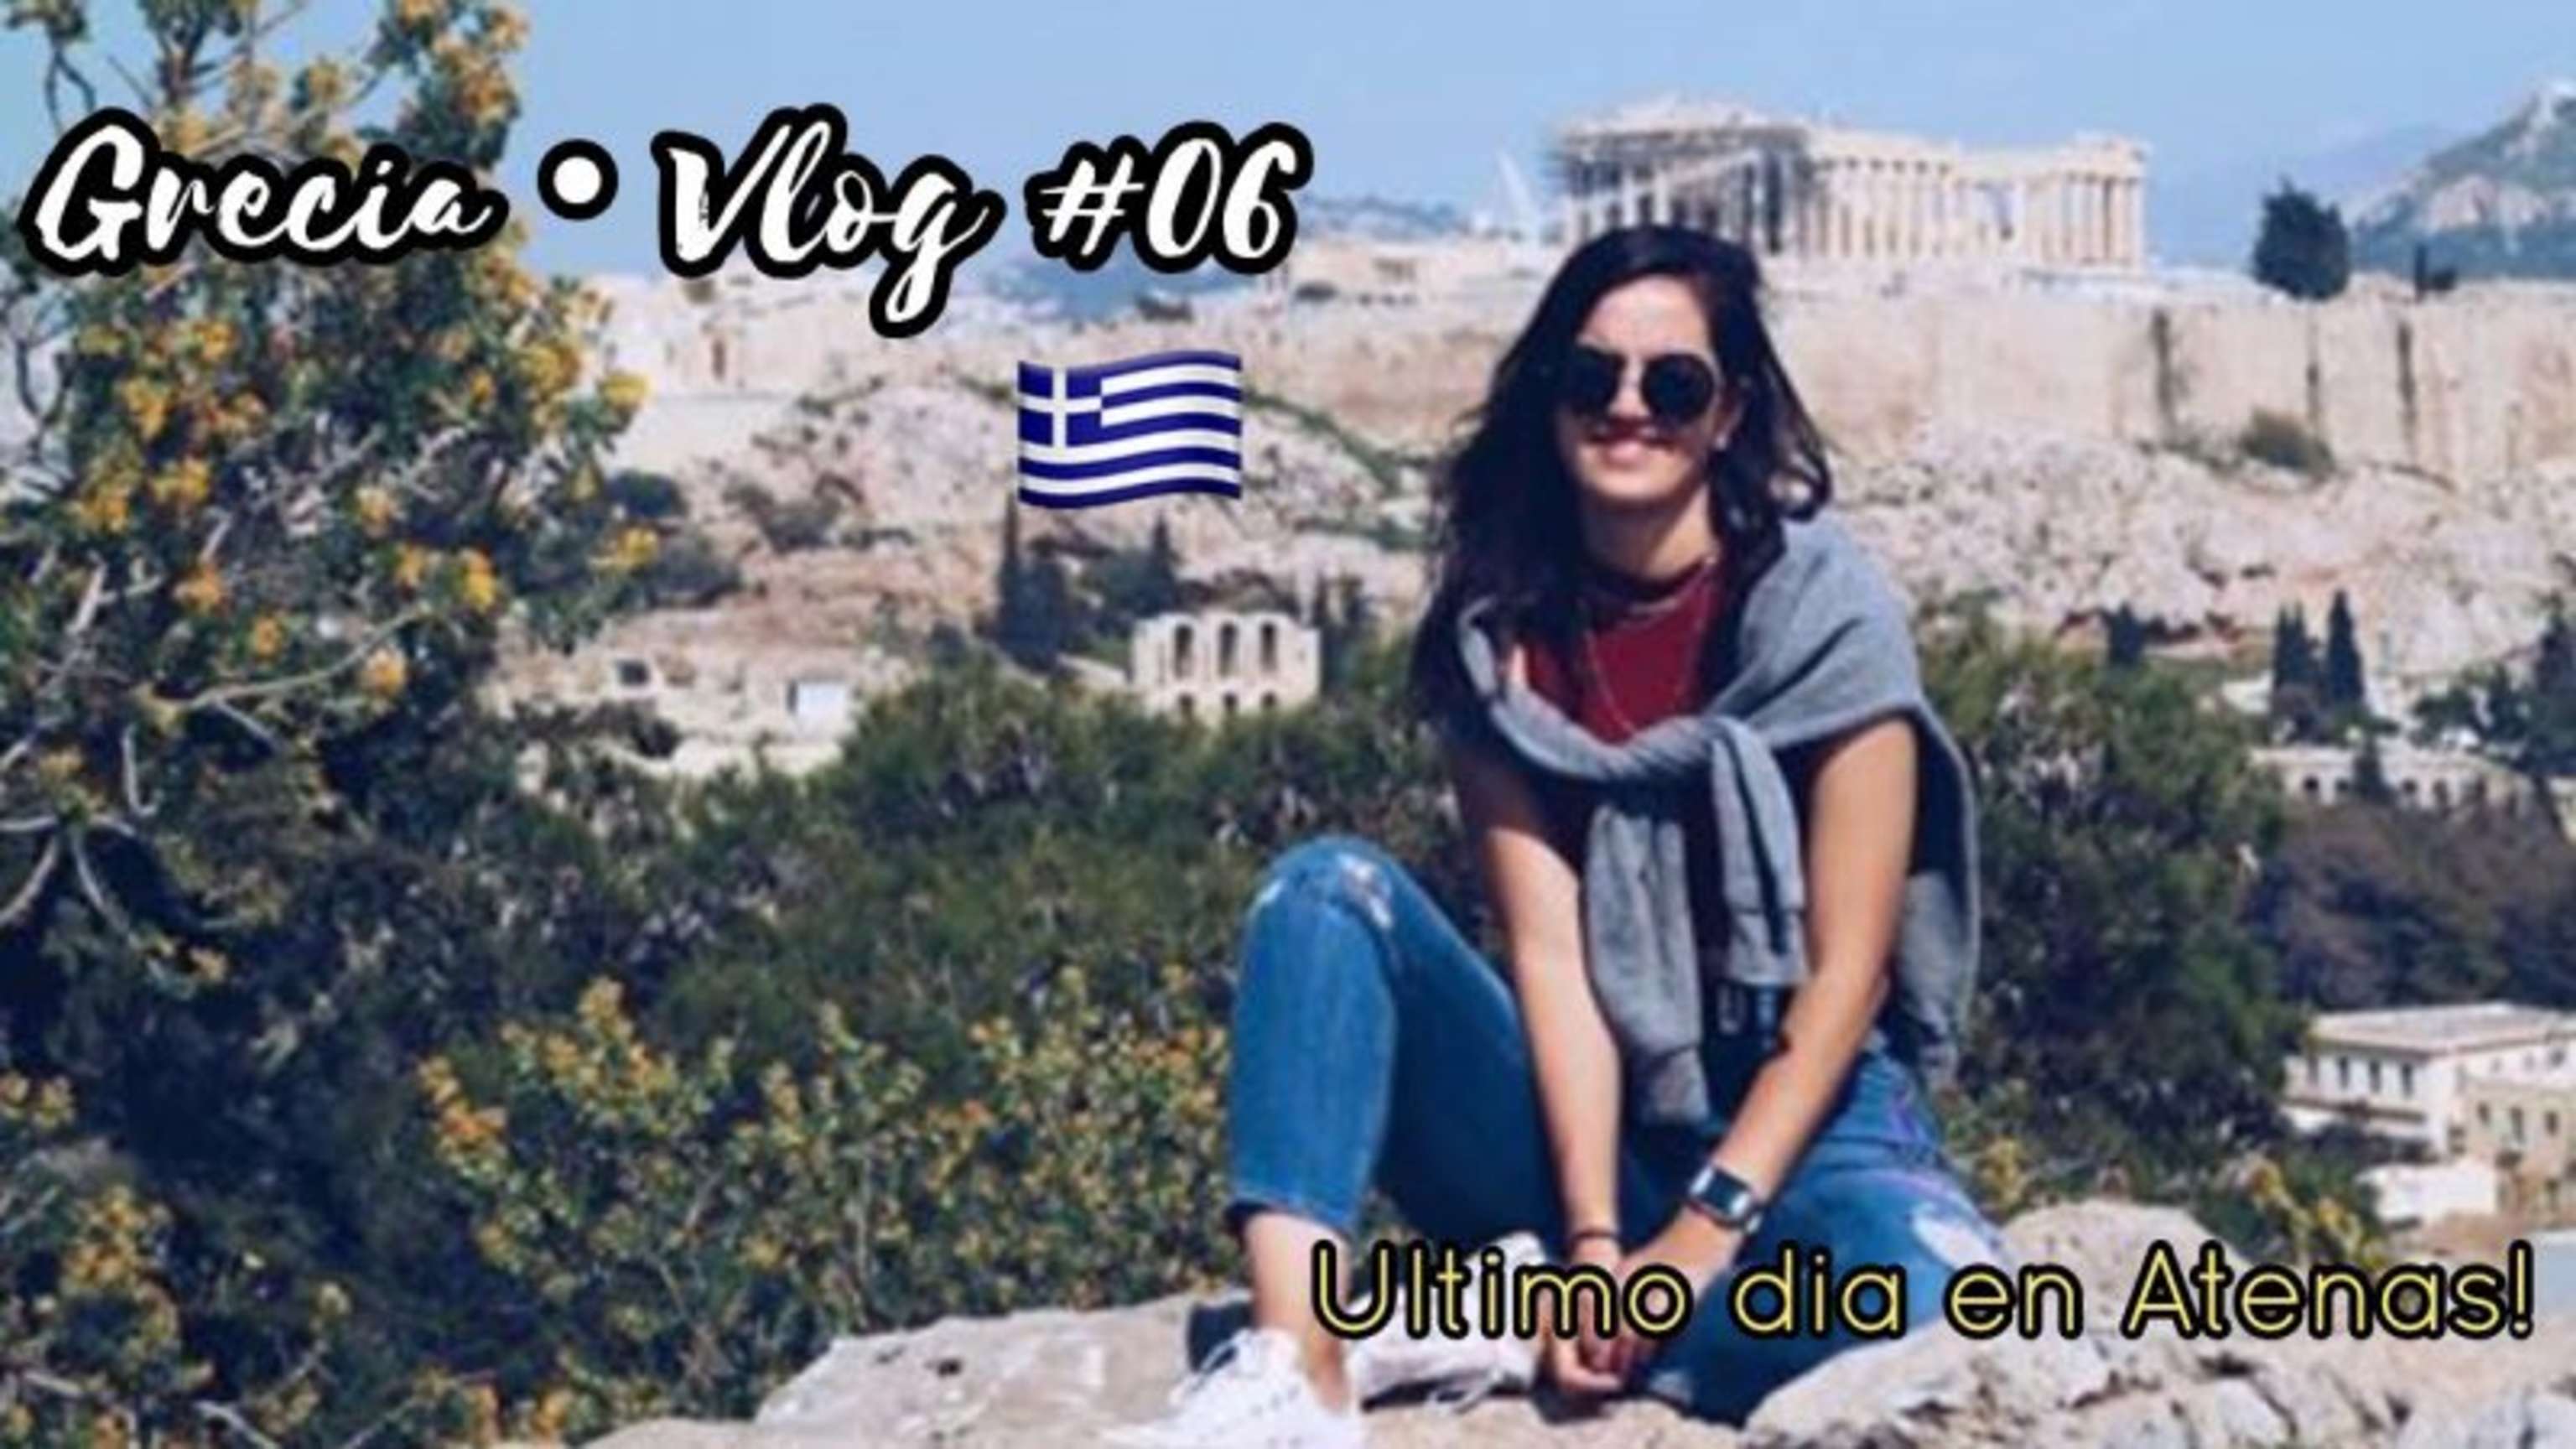 Último día en Atenas! | GRECIA VLOGS #06